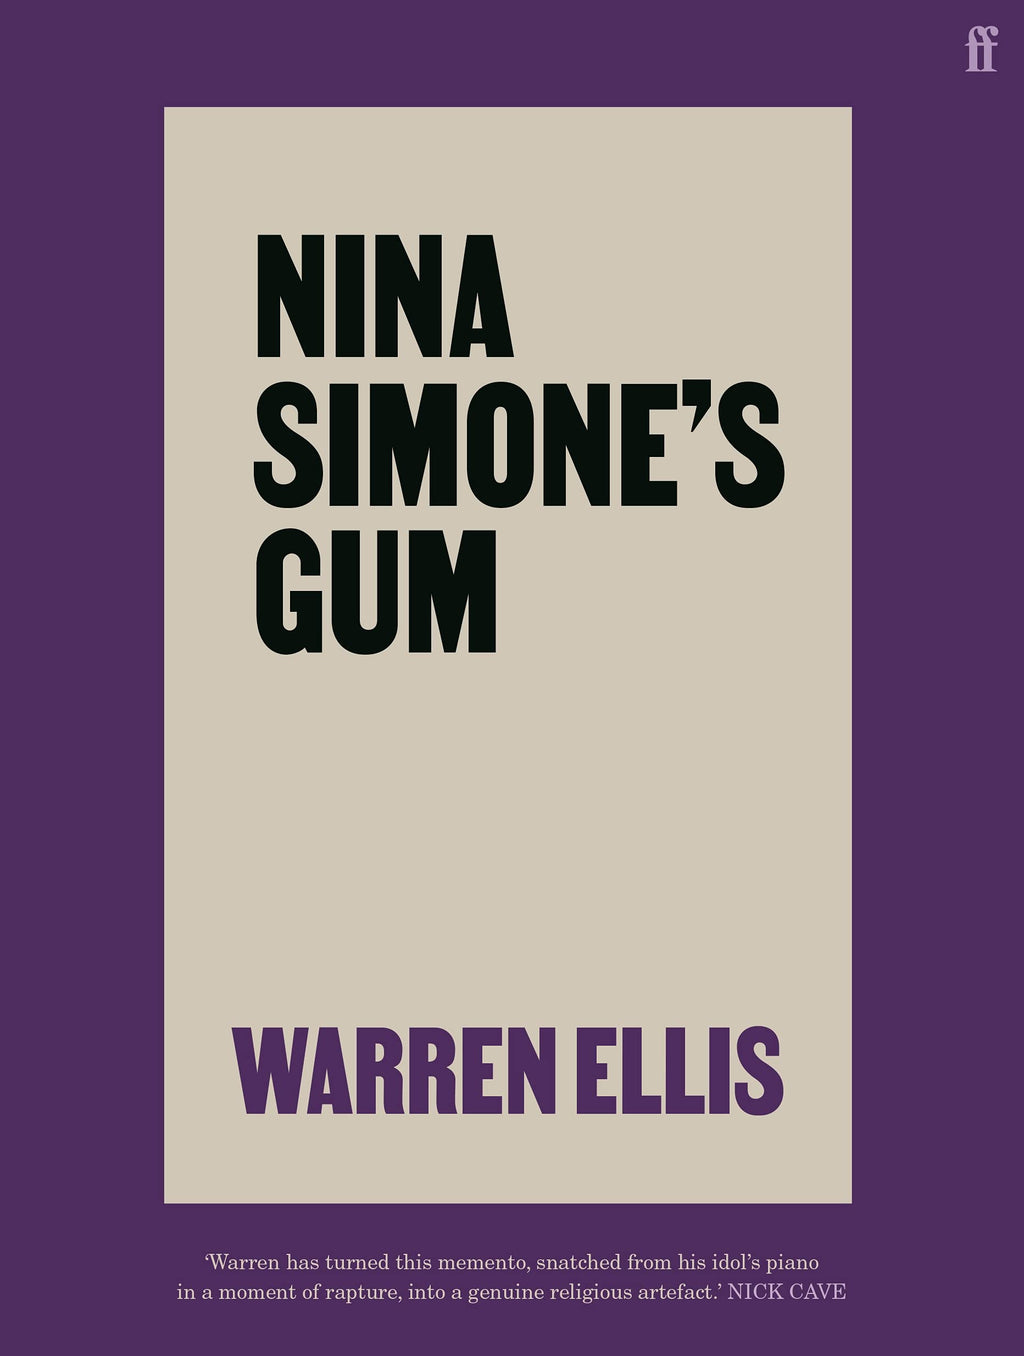 Nina Simone's Gum by Warren Ellis